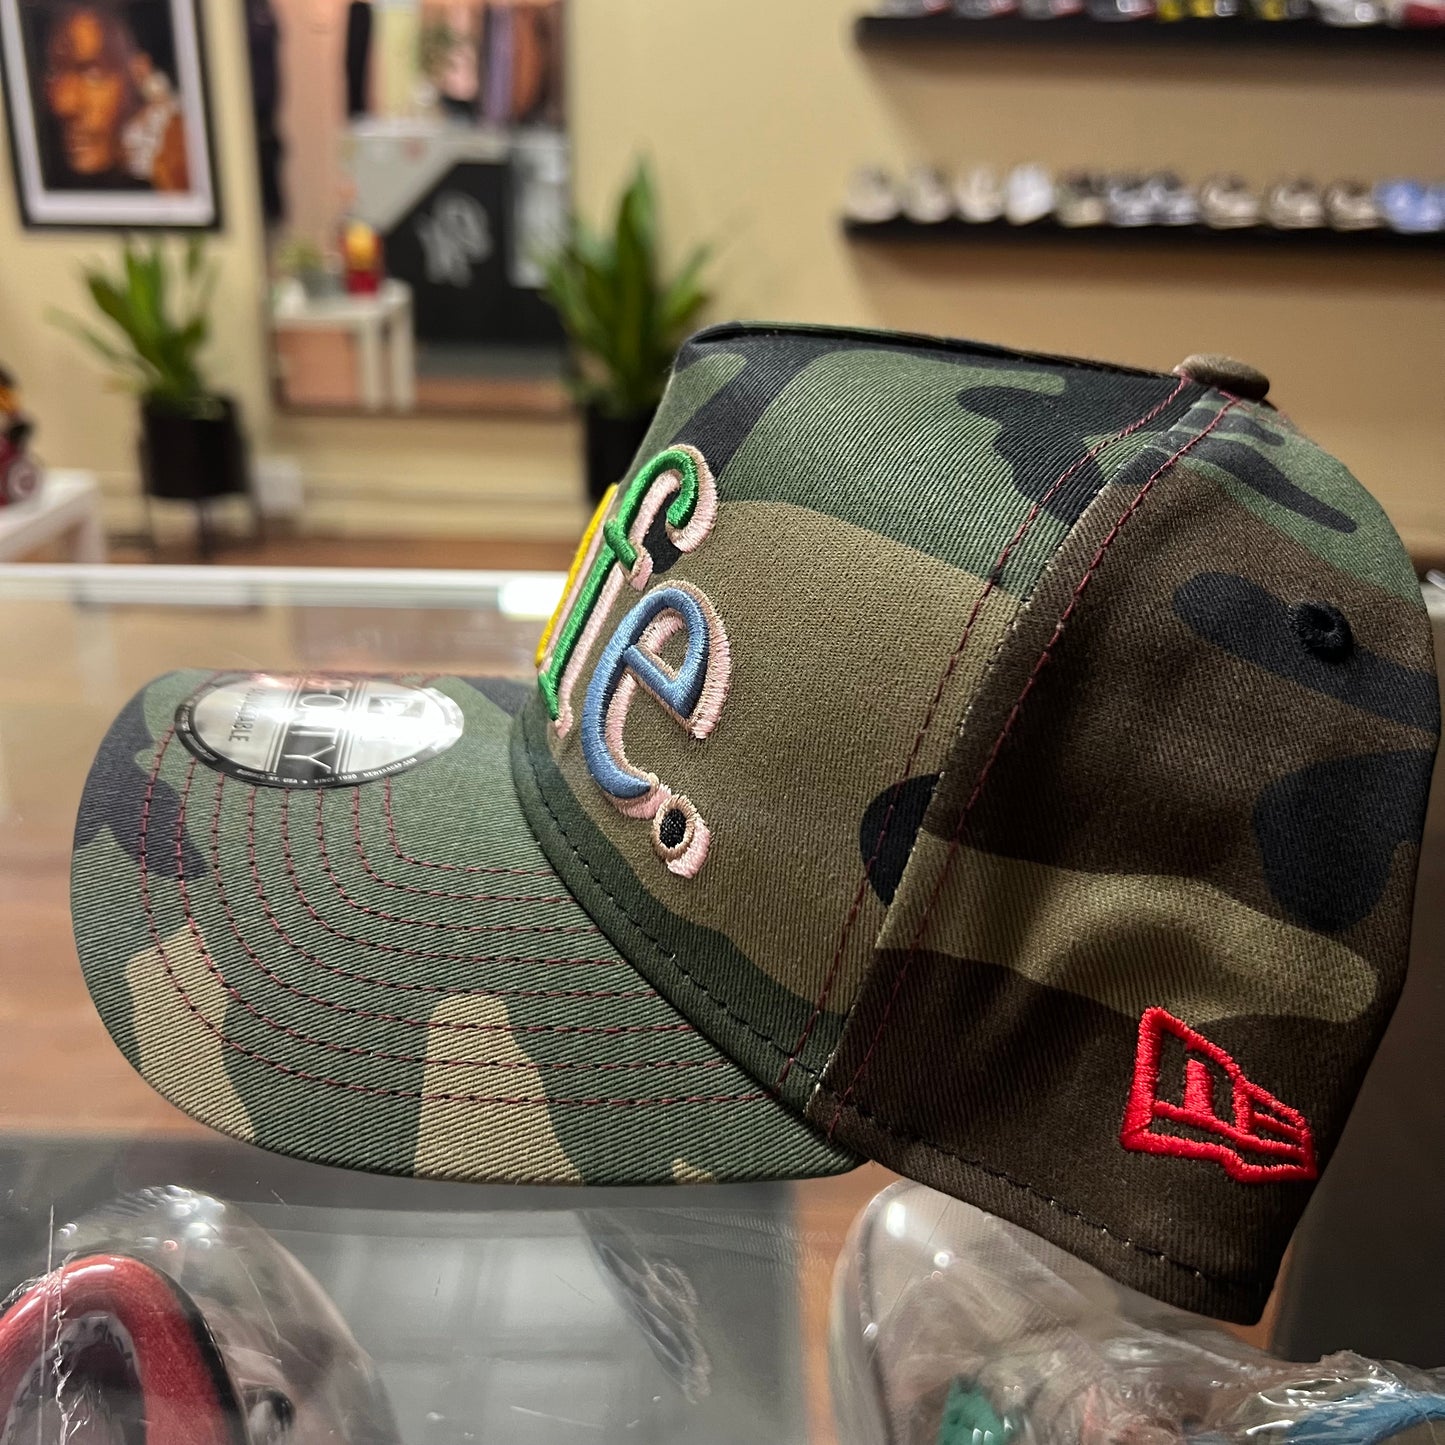 Cafe New Era Trucker Hat (OG Green Camo)